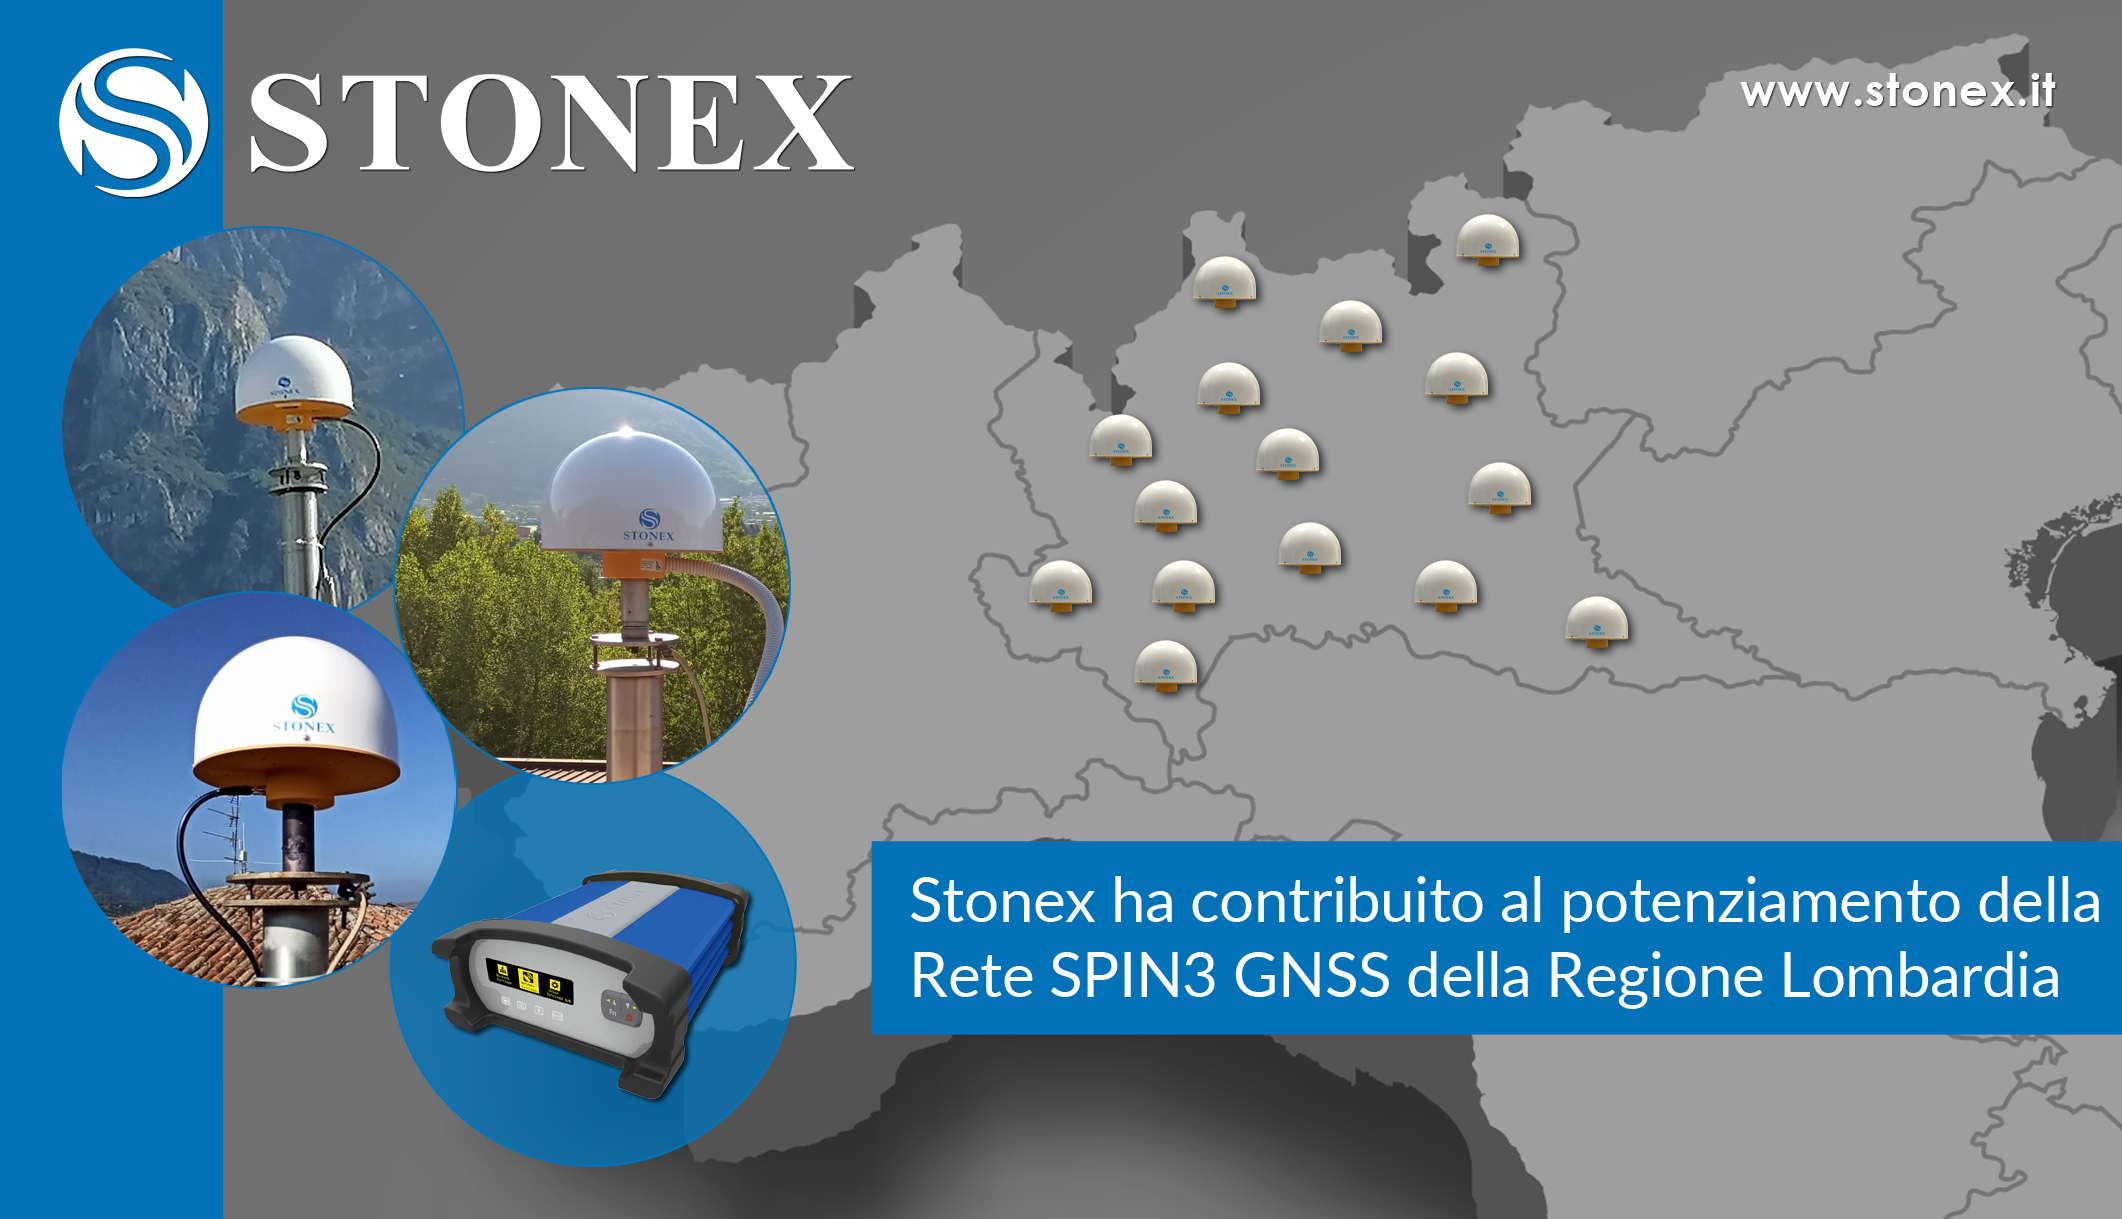 Stonex ha contribuito al potenziamento della Rete SPIN3 GNSS in Regione Lombardia